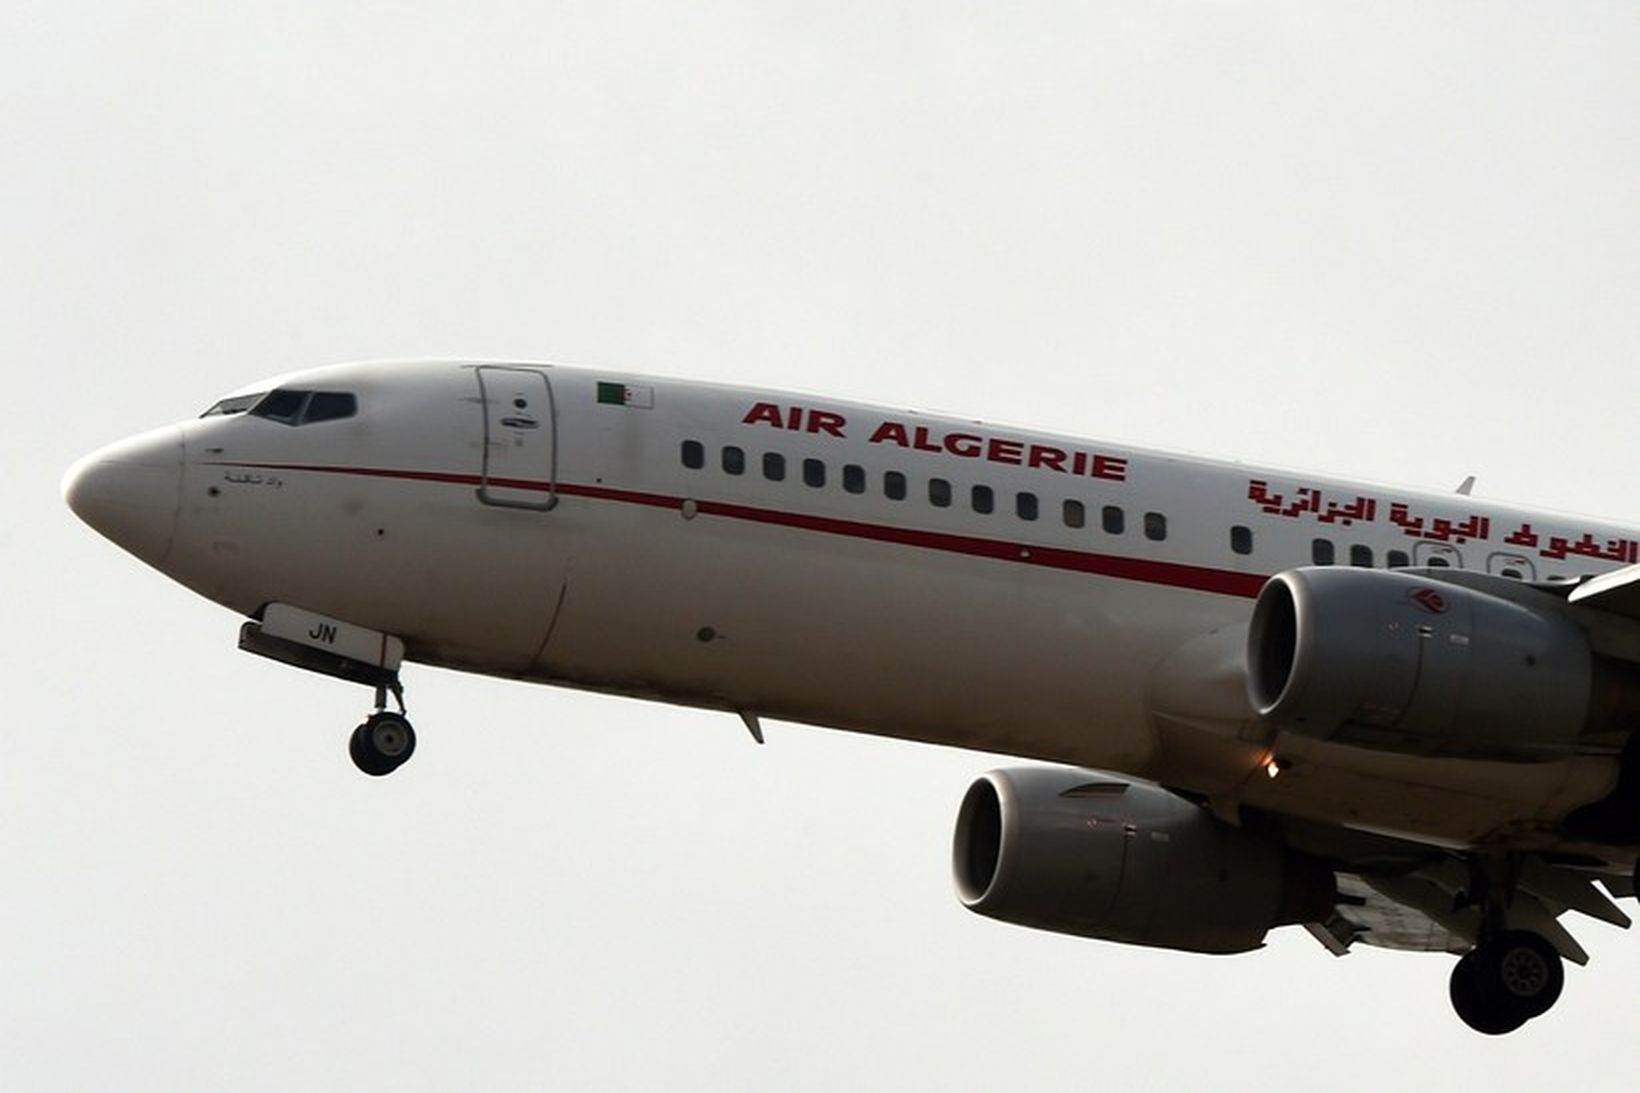 Farþegaflugvél frá flugfélaginu Air Algerie.